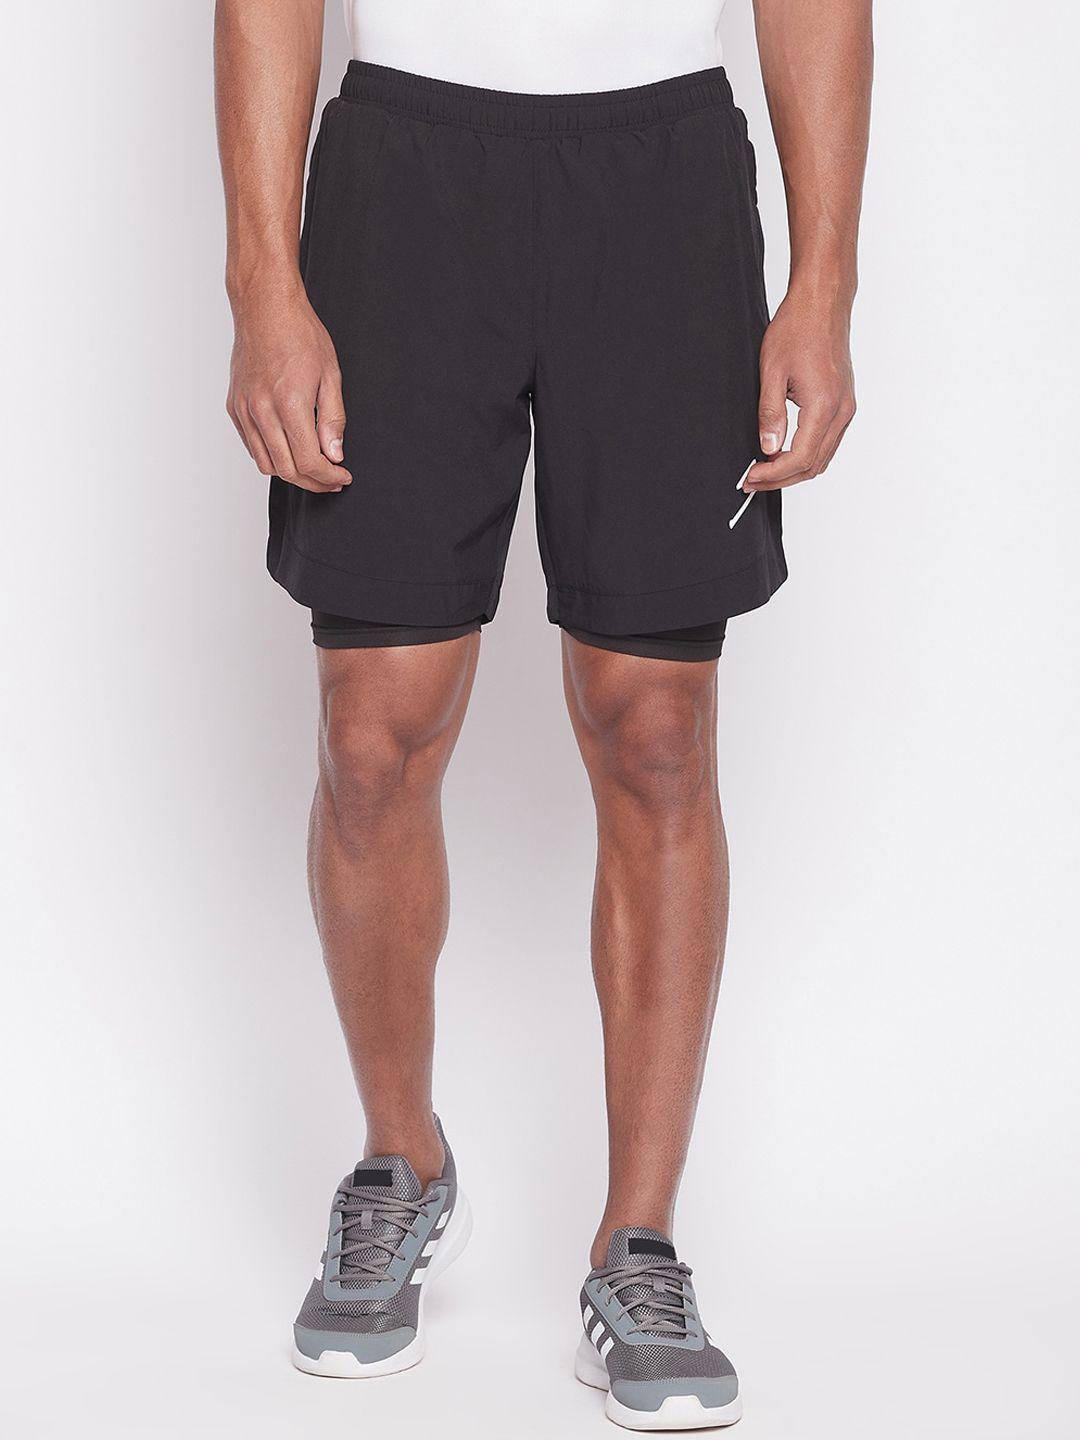 unpar men sports shorts